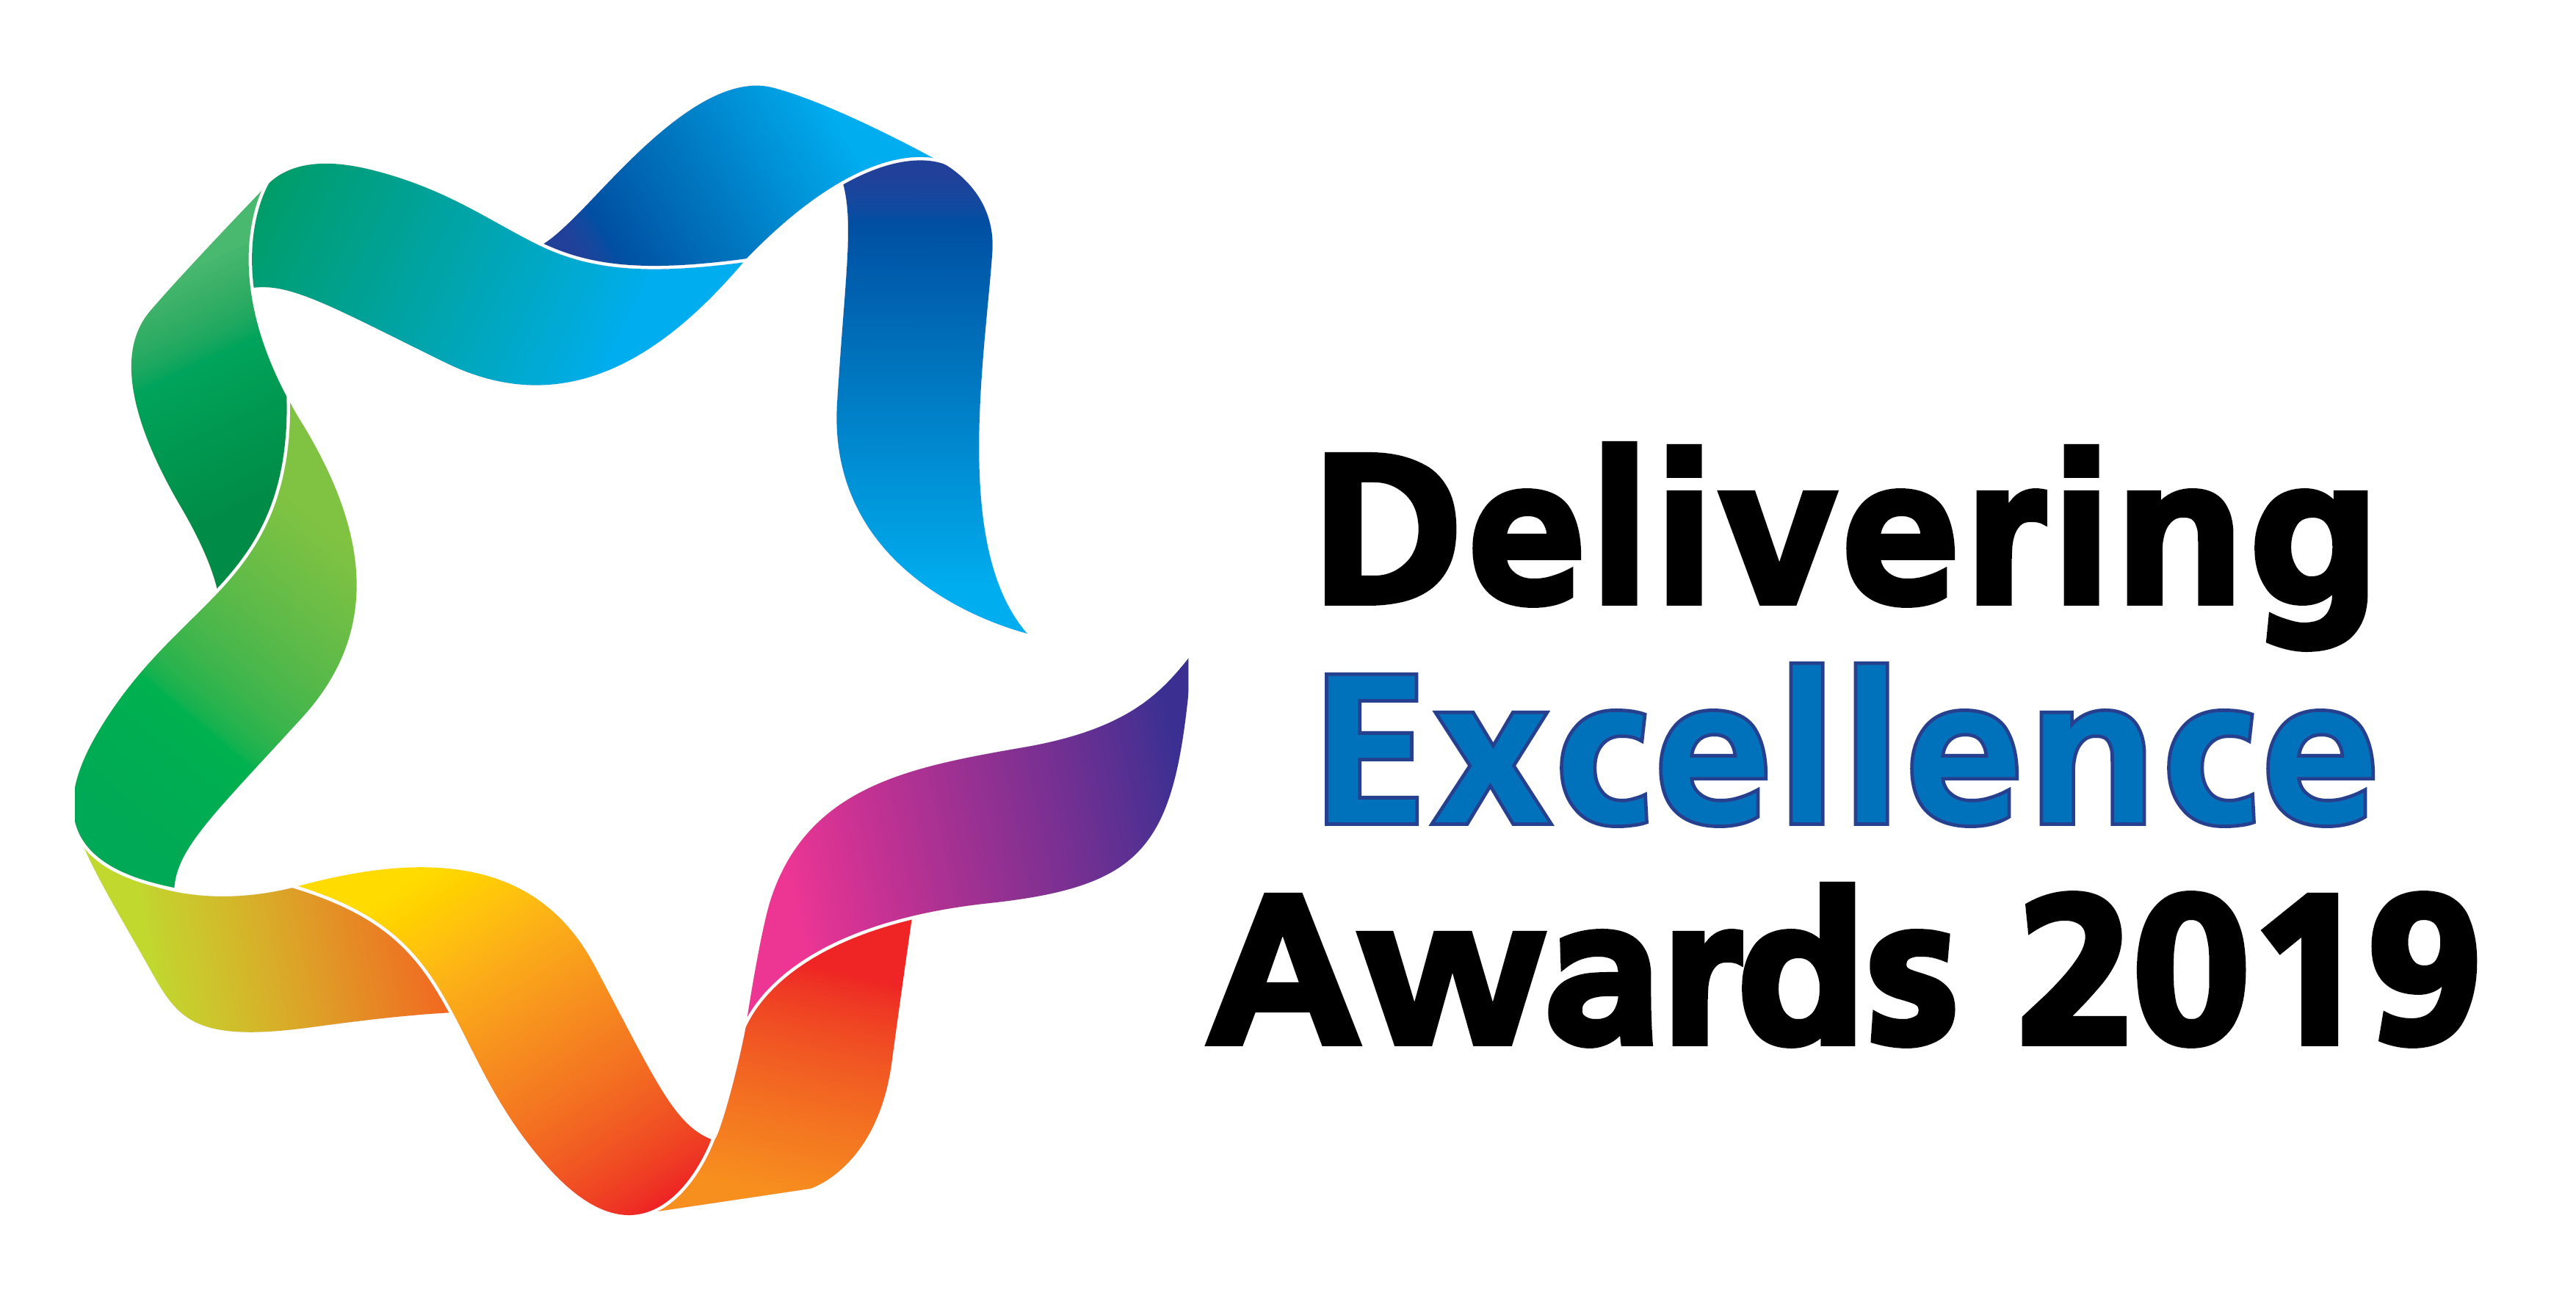 Delivering Excellence Awards 2018 LOGO 150dpi.jpg